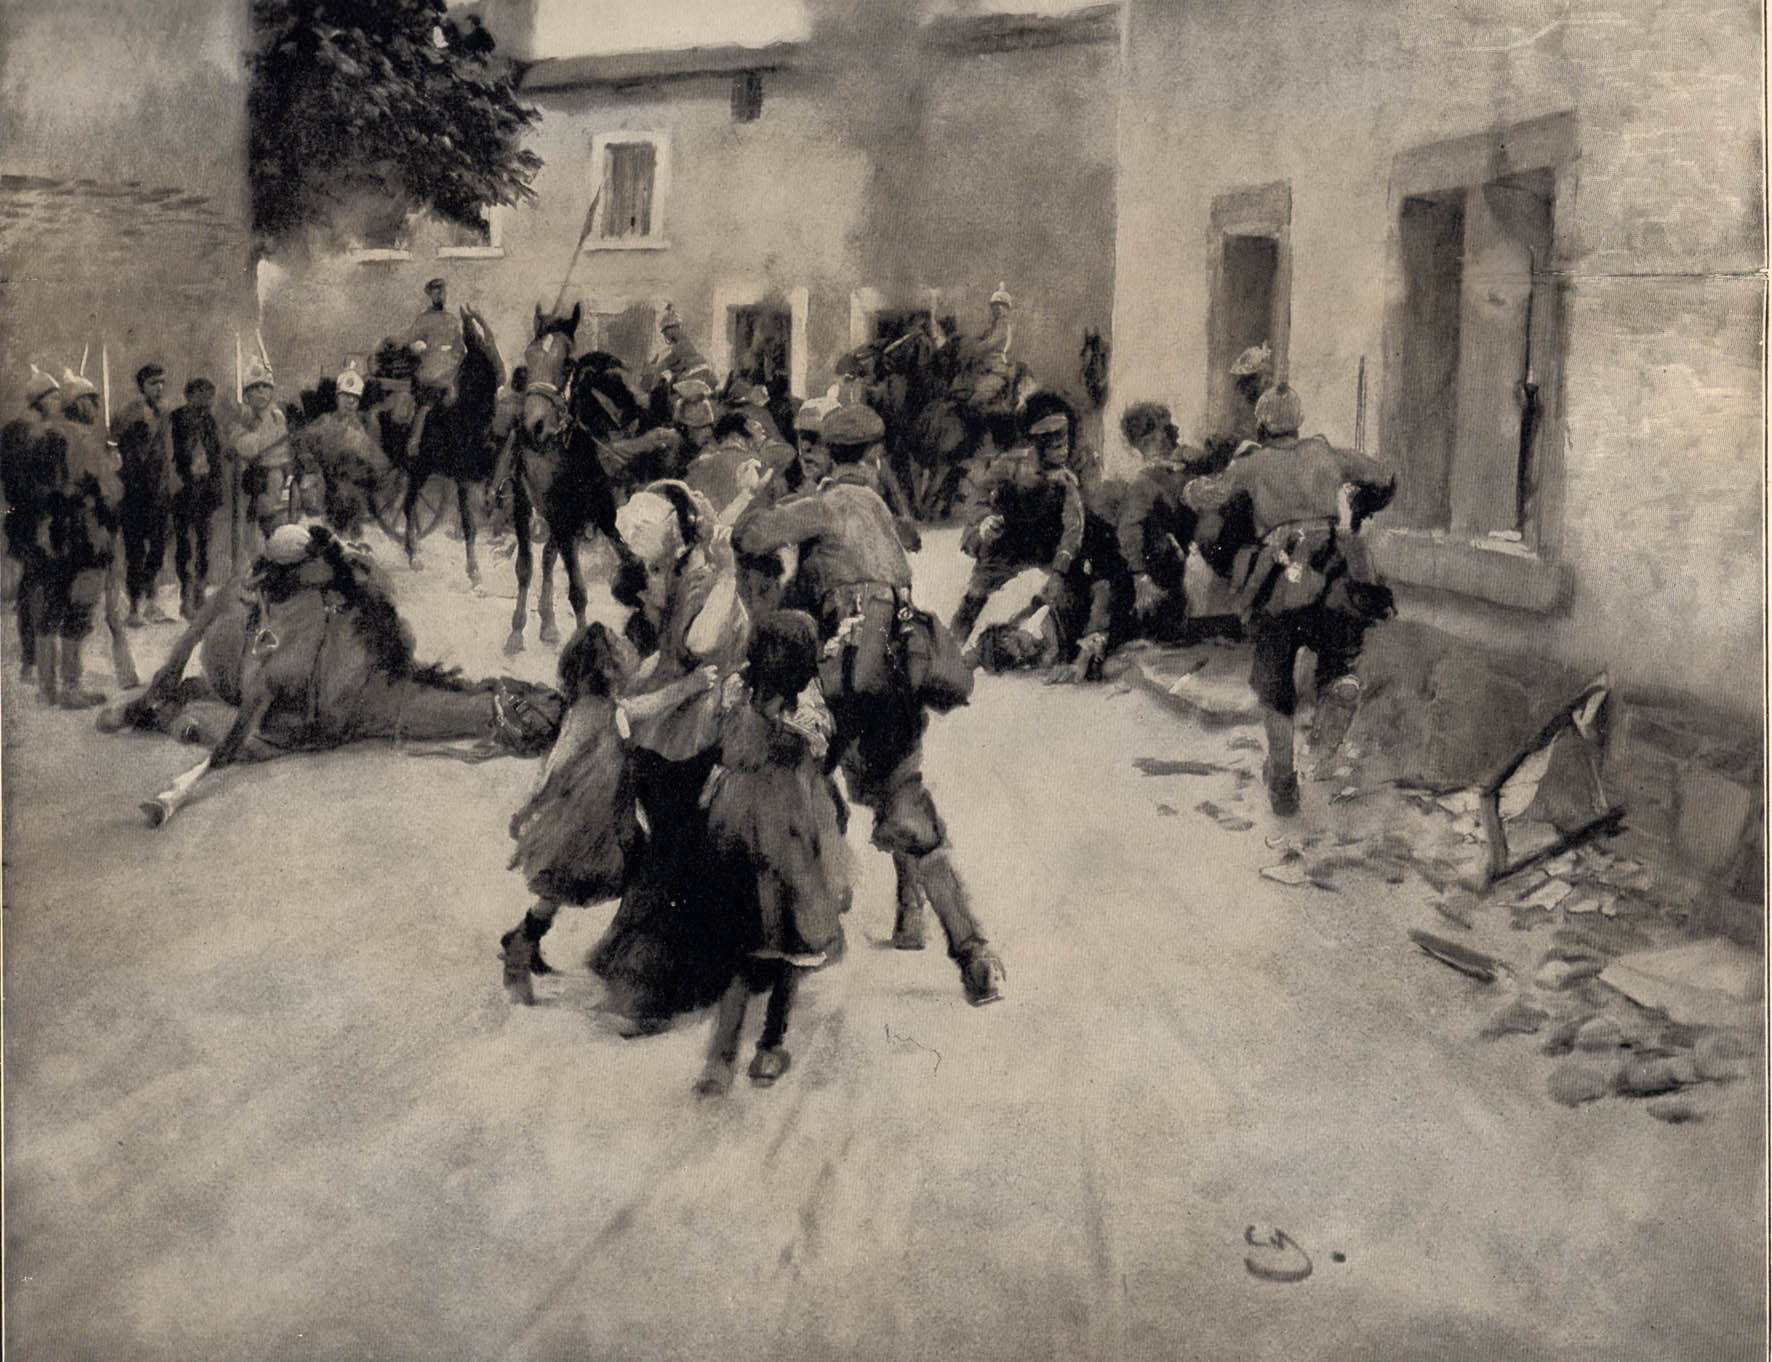 12. august 1914. Regiment 86 i Belgien. Civilister undgælder for skyderier.